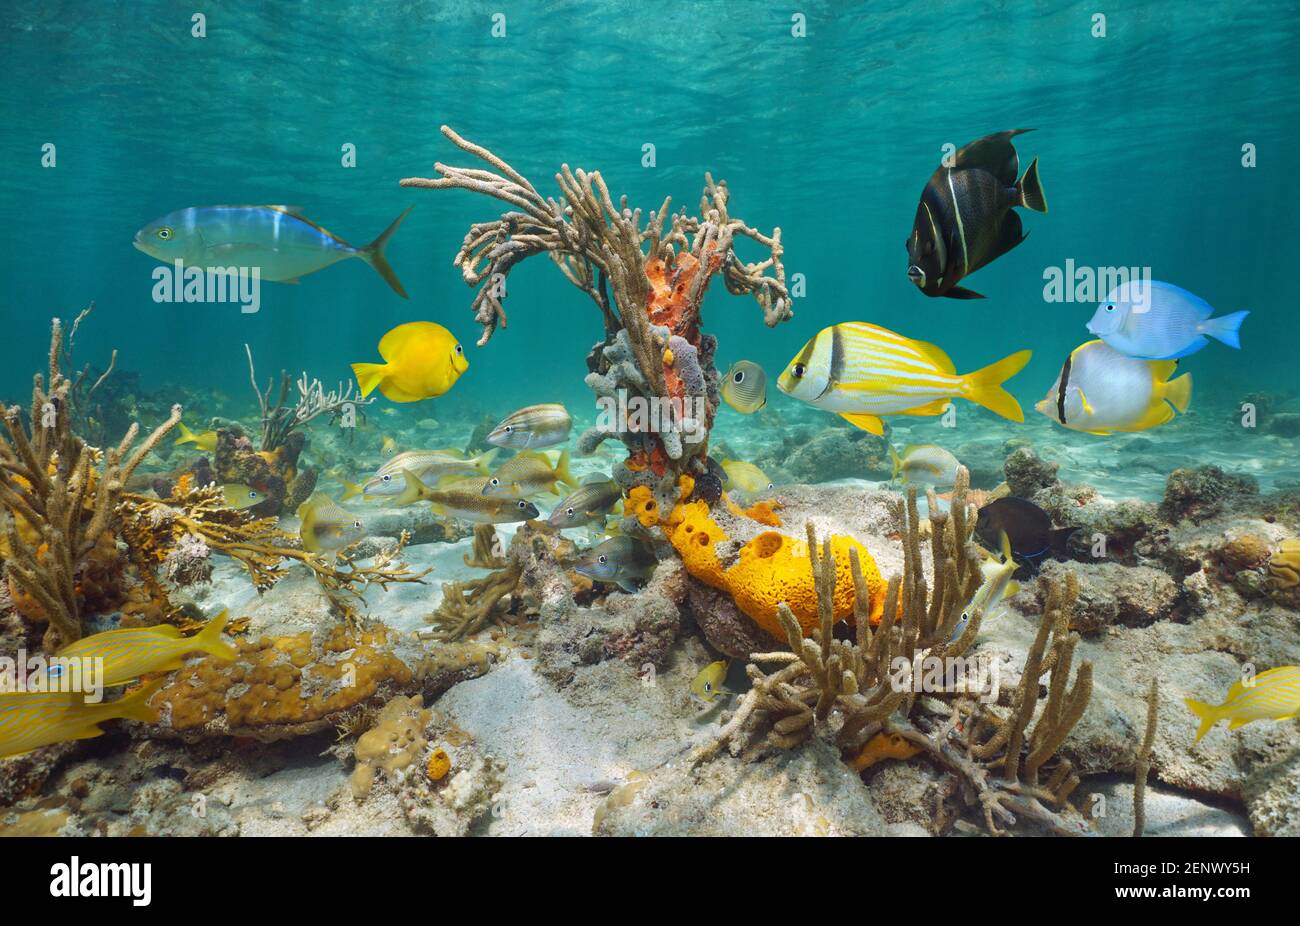 La vie marine dans la mer des Caraïbes, poissons tropicaux colorés avec des coraux doux et des éponges sous l'eau dans un récif peu profond, Amérique centrale, Panama Banque D'Images